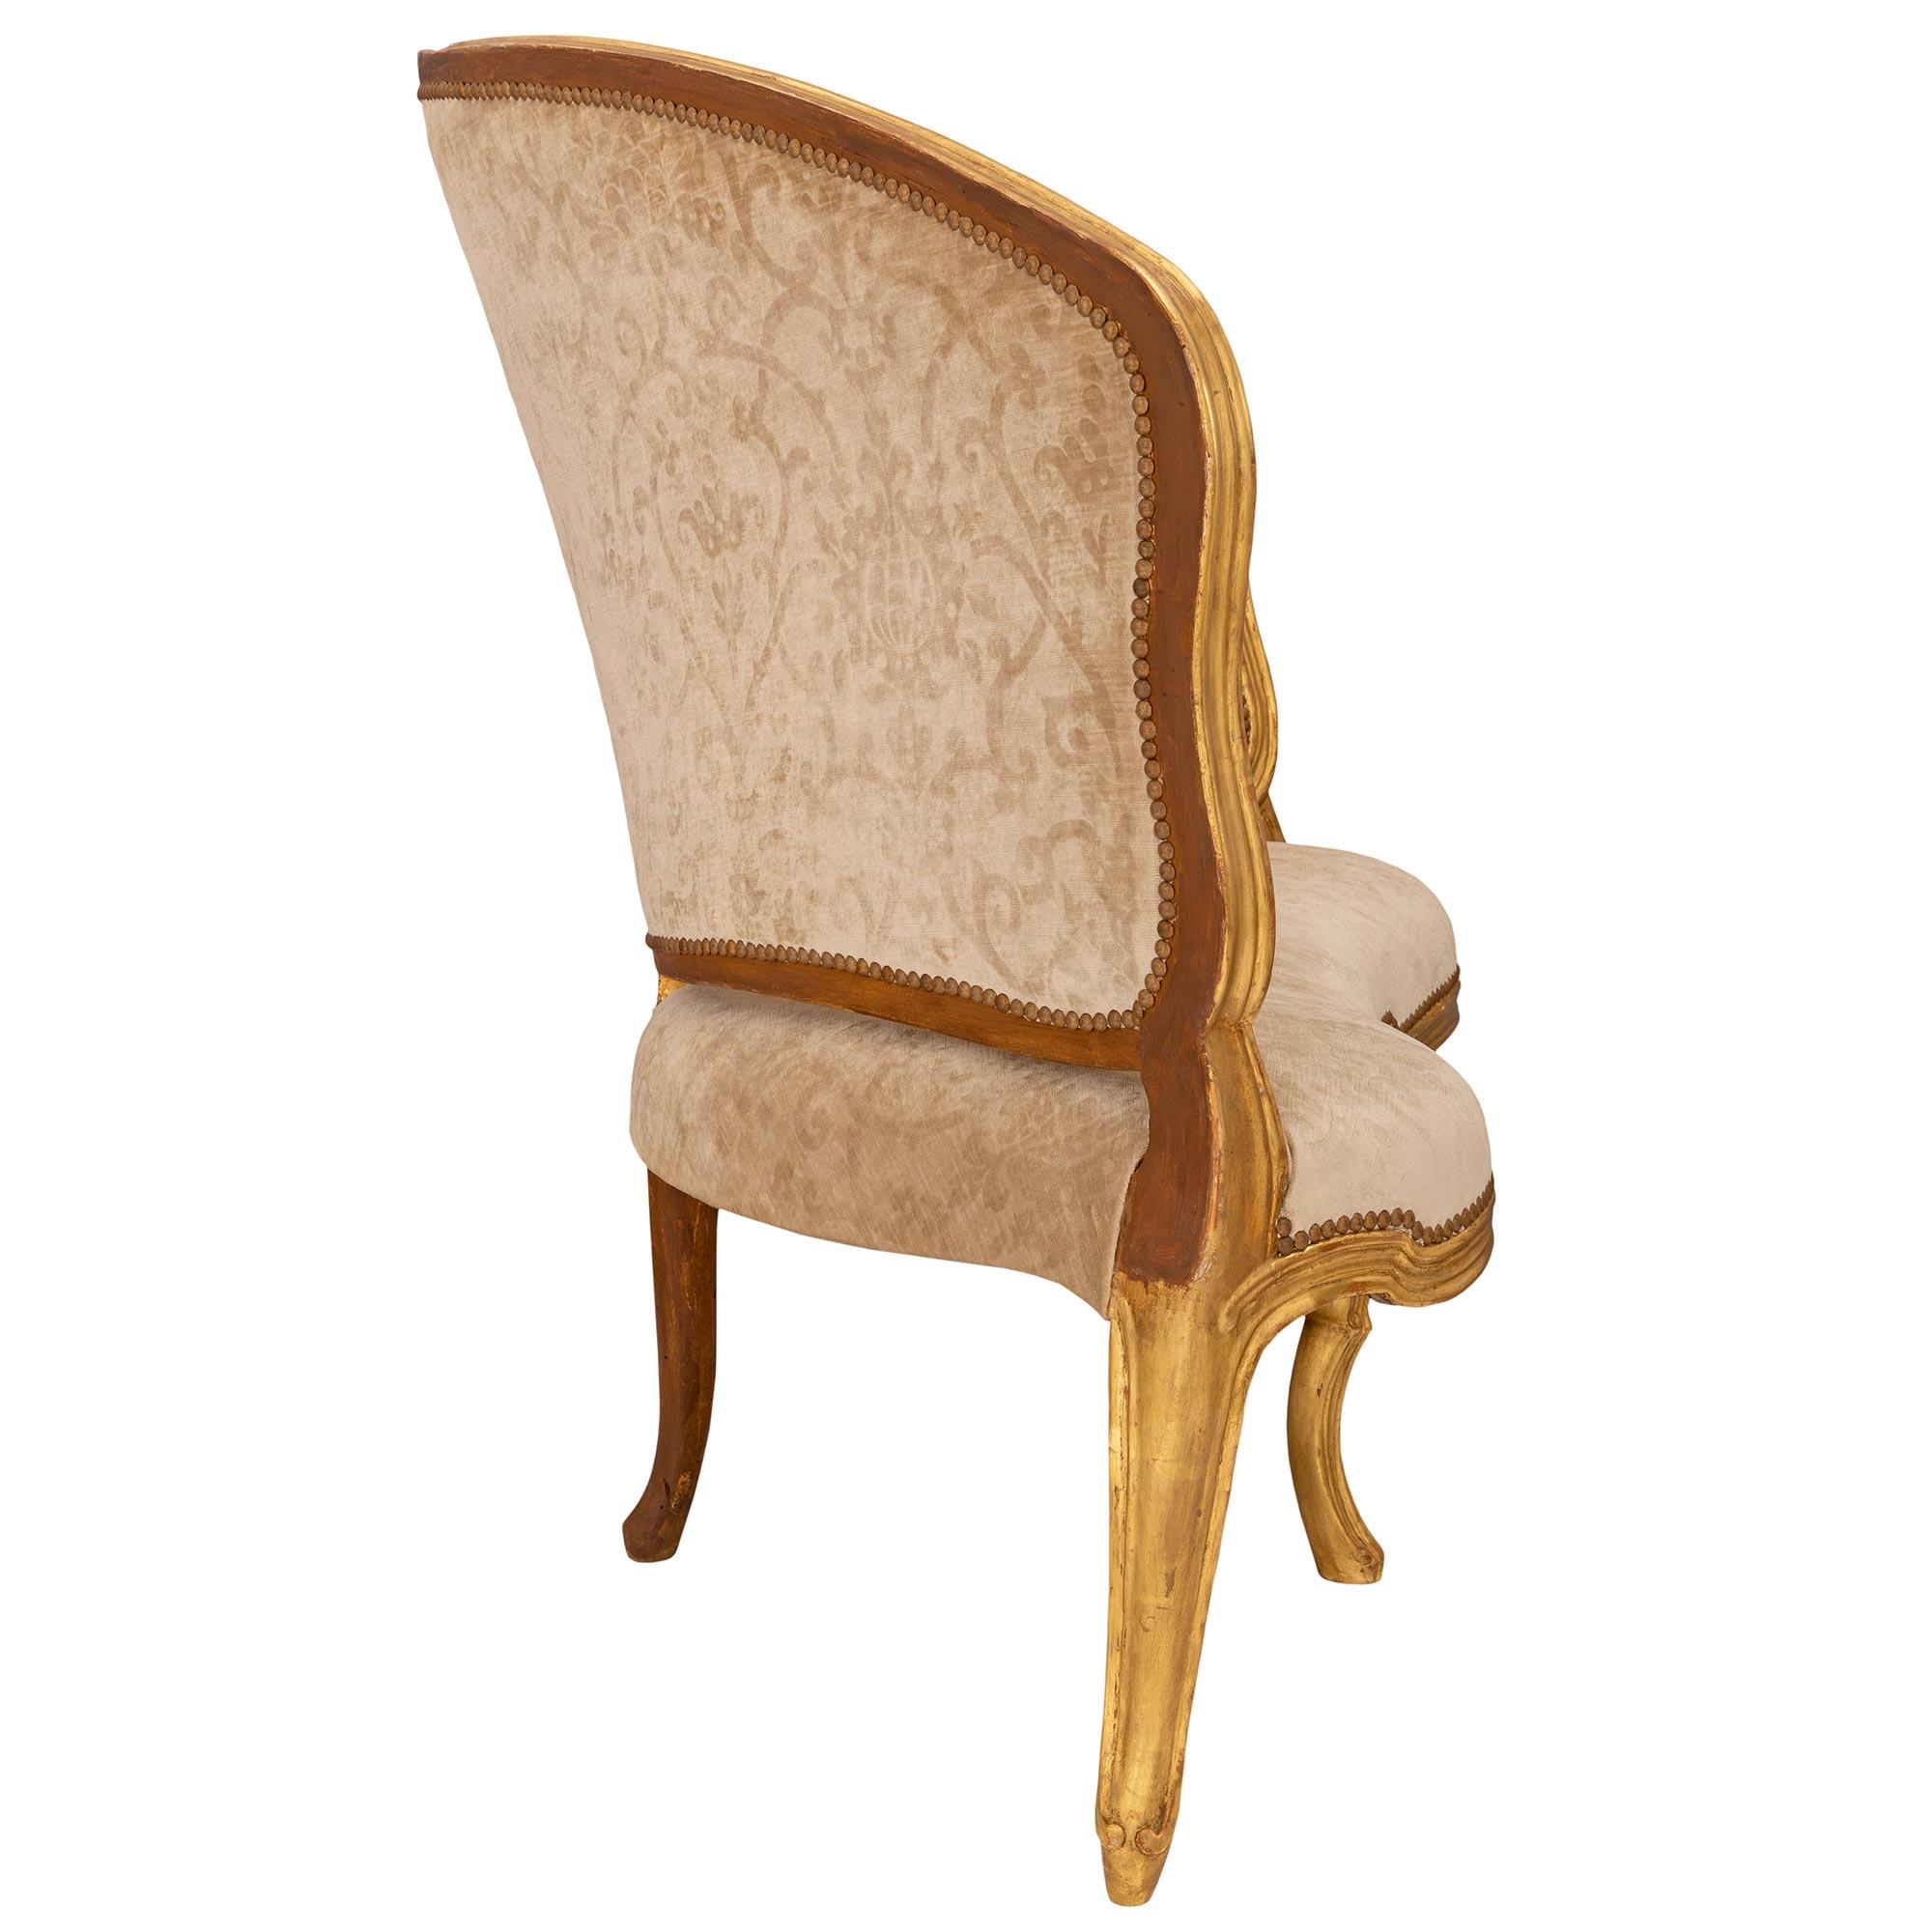 Ein sehr elegantes und äußerst einzigartiges Paar italienischer Eckstühle aus venezianischem St. des 18. Jeder Stuhl steht auf schlanken Cabriole-Beinen mit hübschen, gesprenkelten Mustern, die sich über den schalenförmigen Fries und entlang jedes